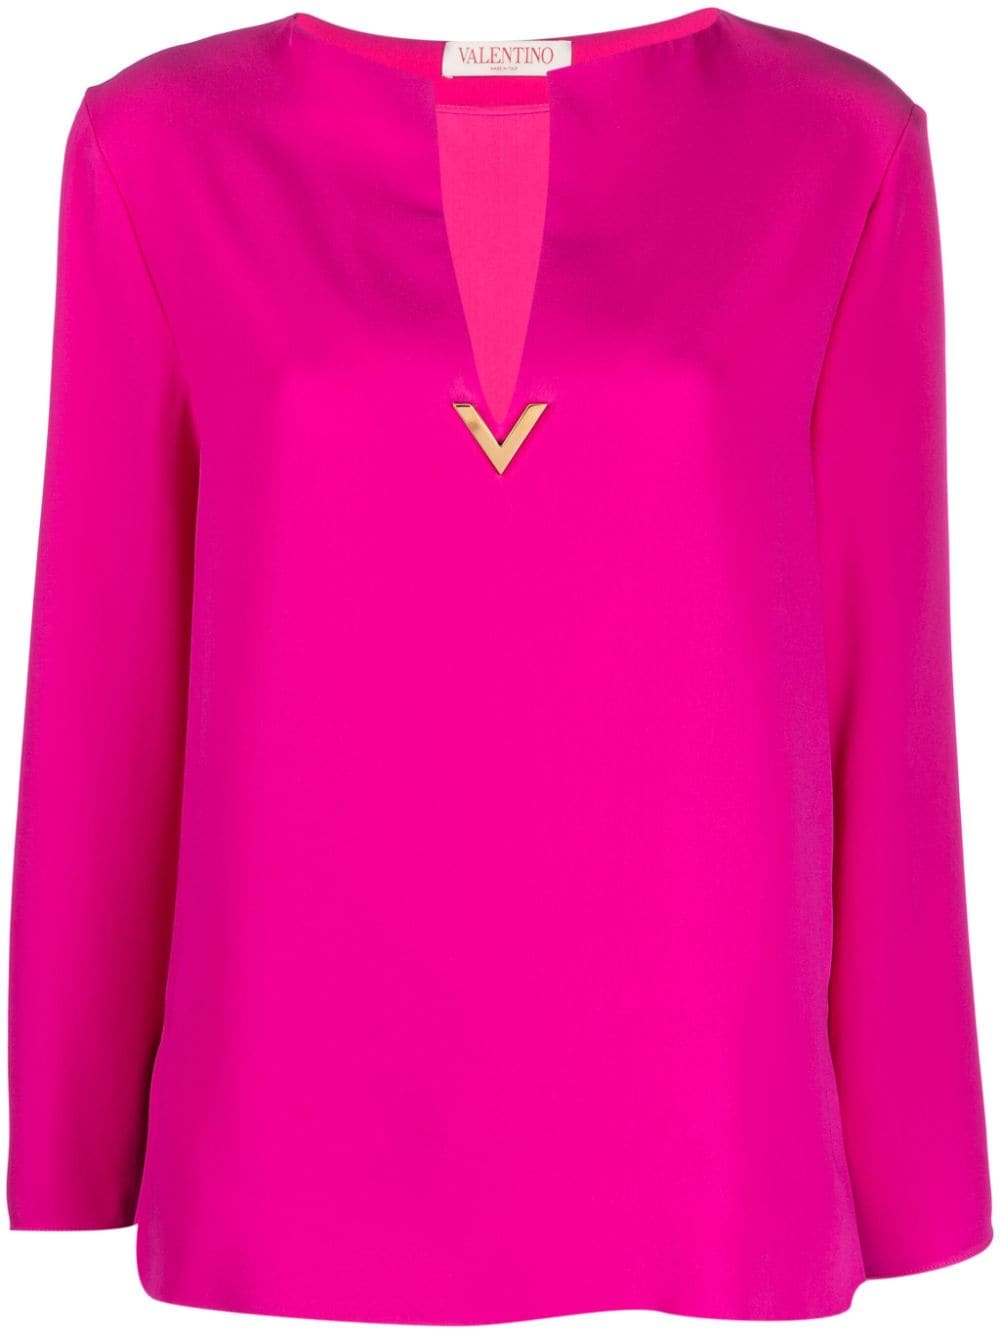 Valentino Garavani Pre-Owned Cady Couture silk blouse - Pink von Valentino Garavani Pre-Owned